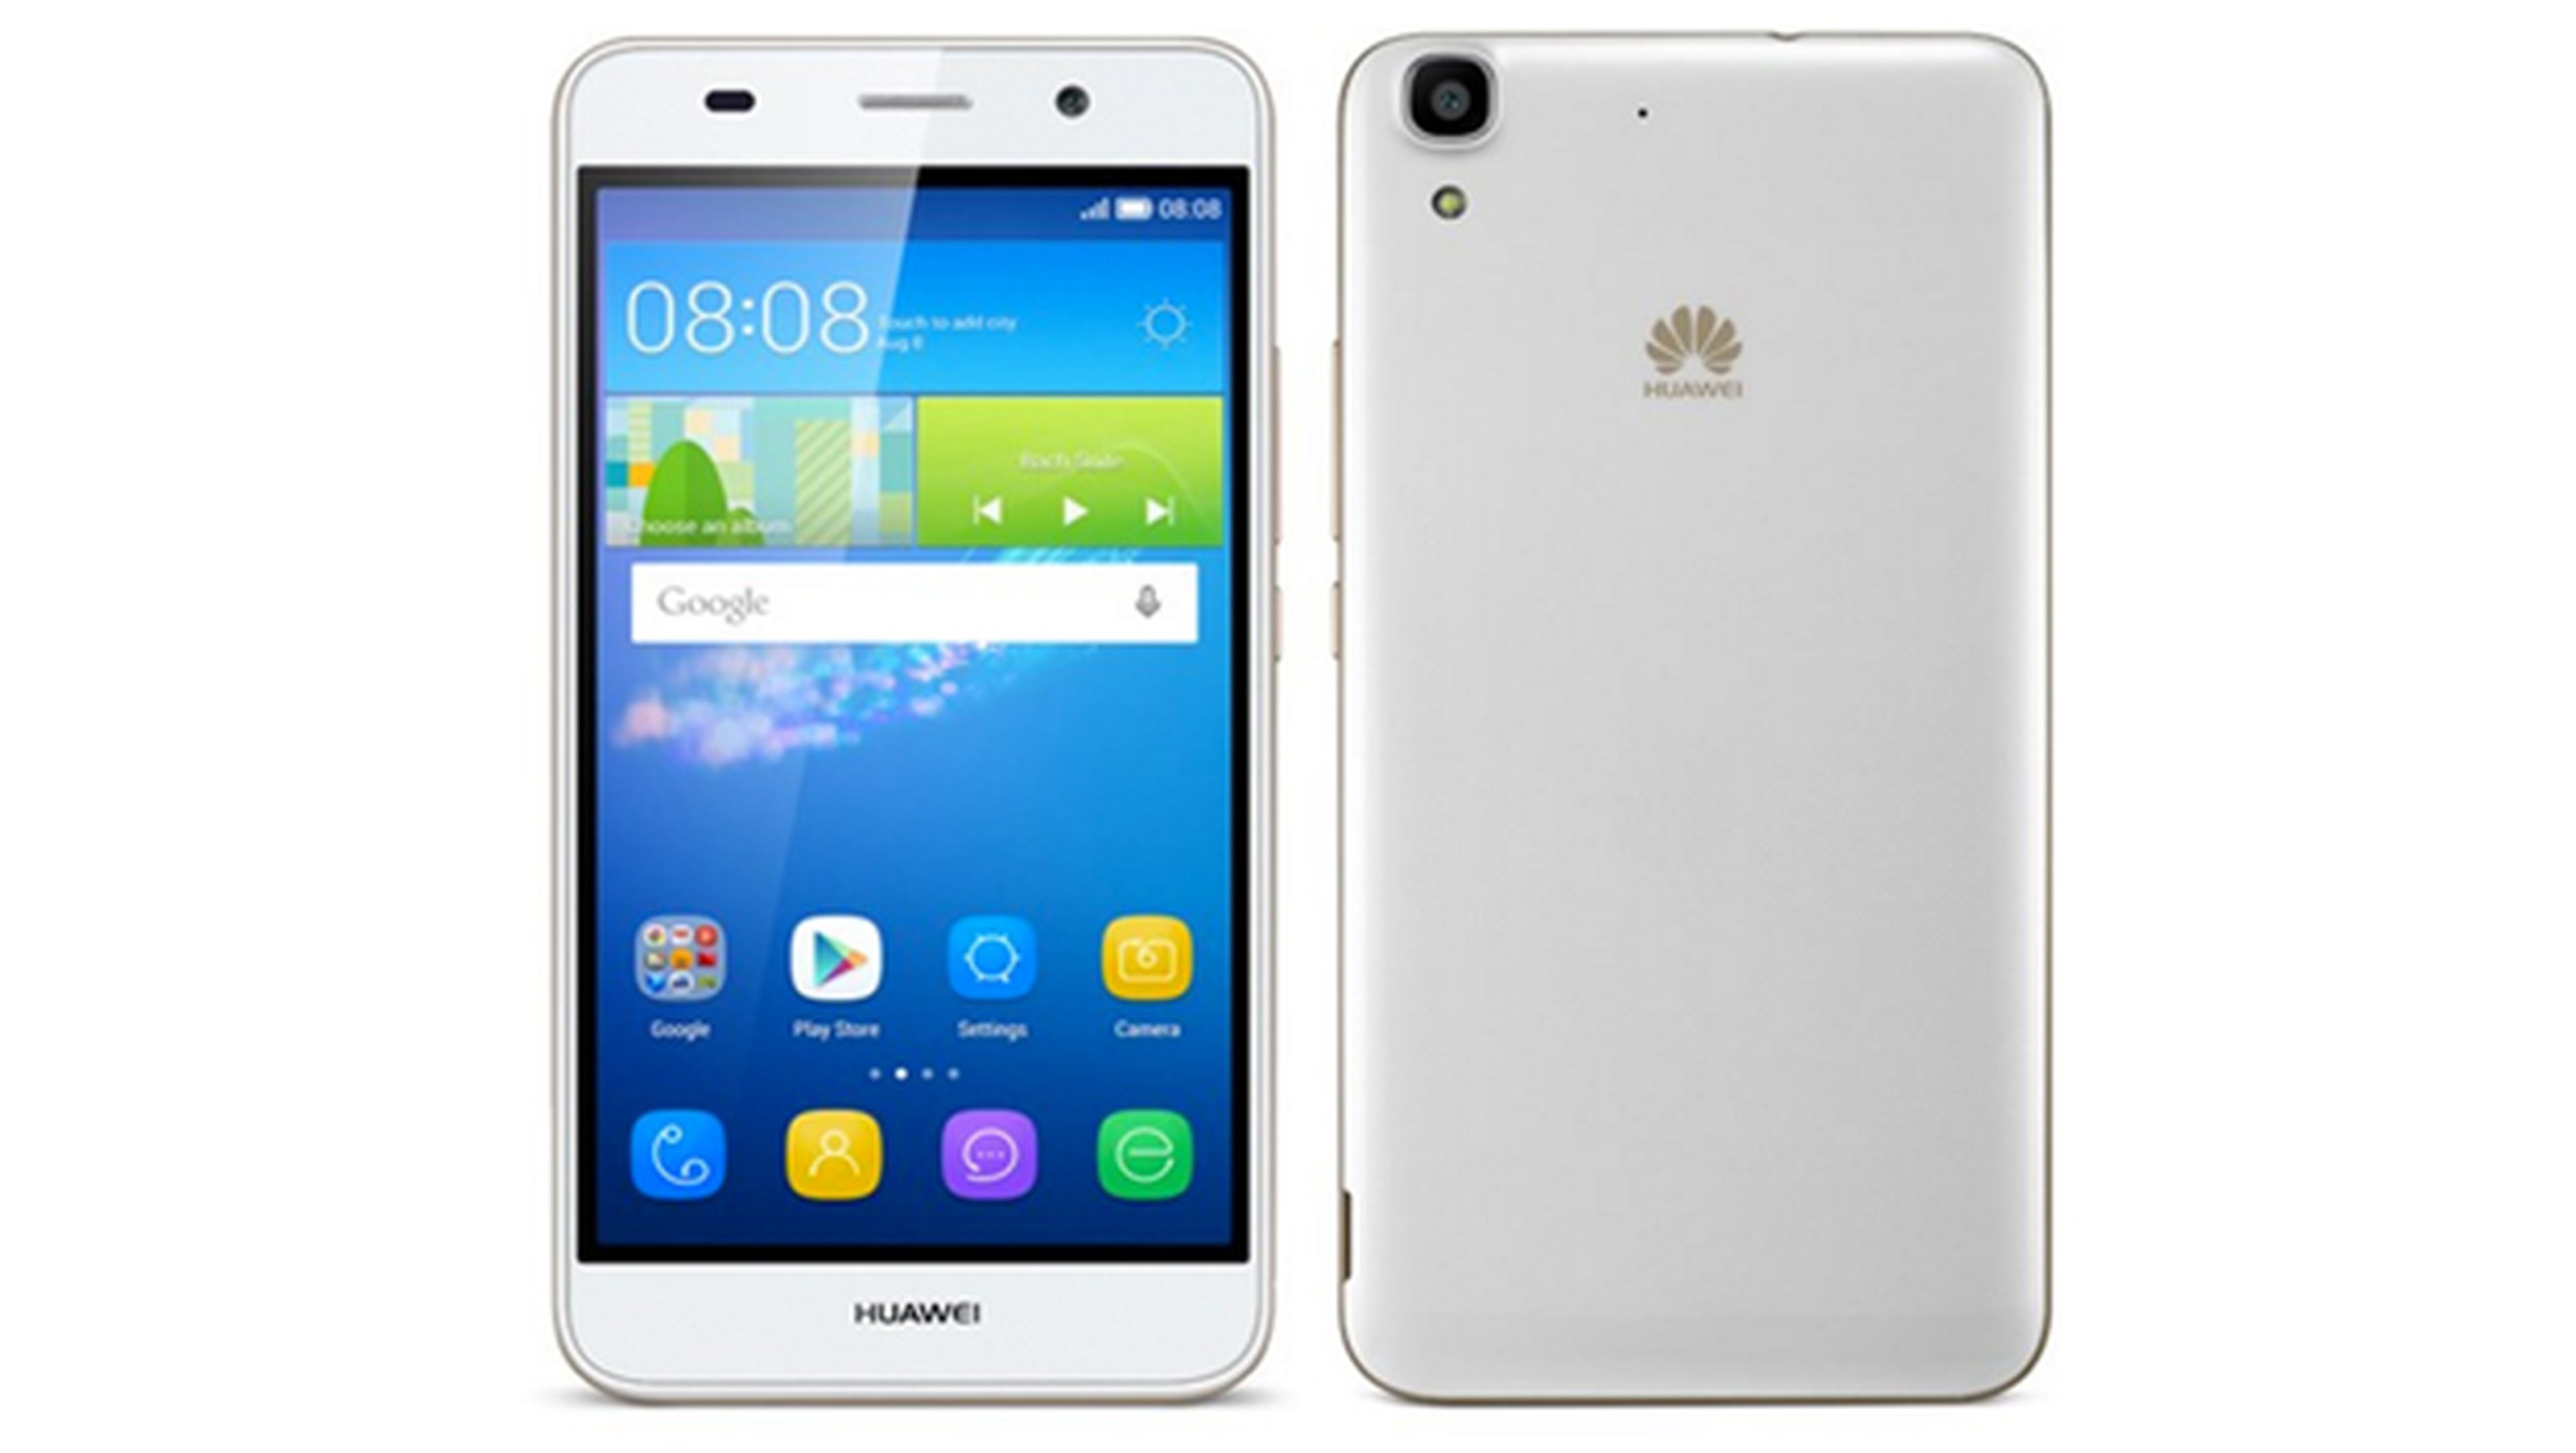 Huawei Y6 oferta móviles huawei